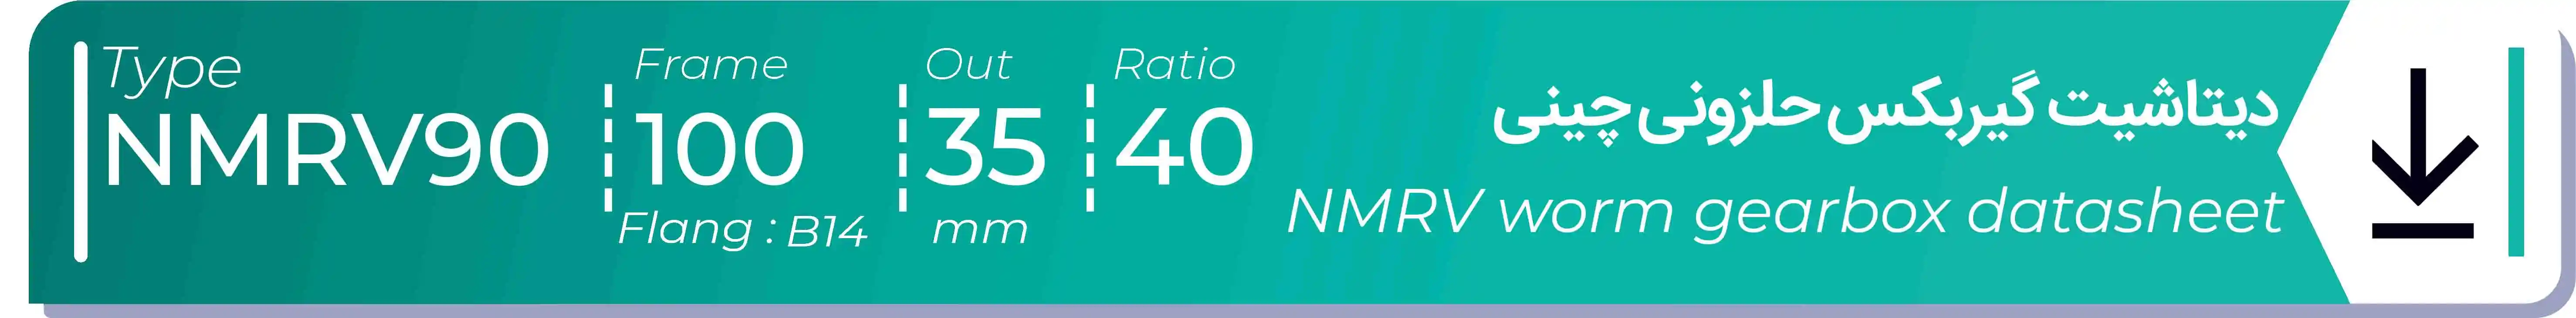  دیتاشیت و مشخصات فنی گیربکس حلزونی چینی   NMRV90  -  با خروجی 35- میلی متر و نسبت40 و فریم 100